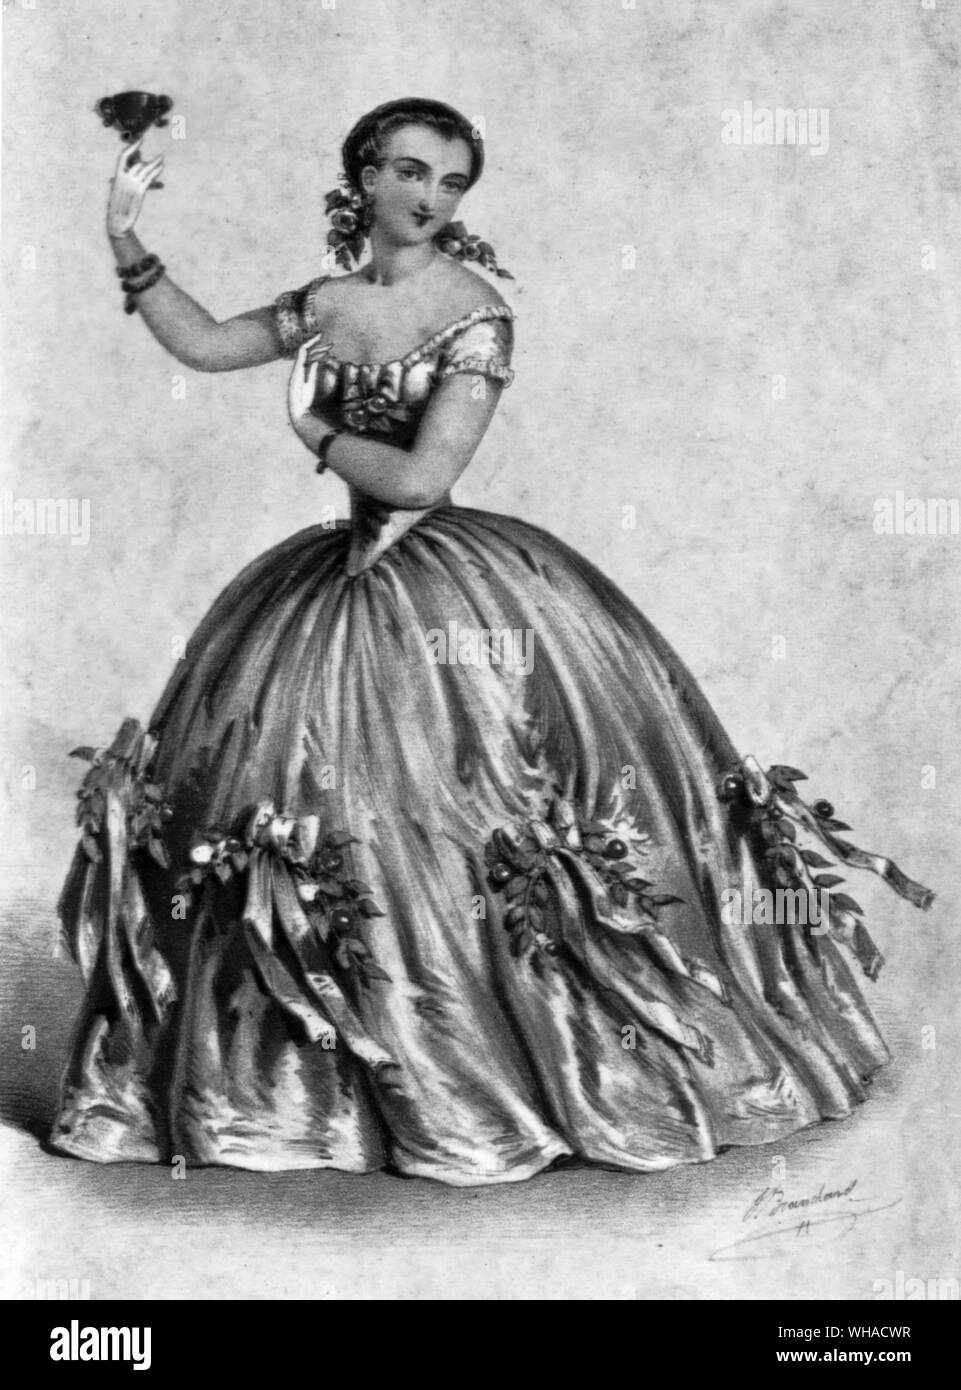 Marietta Piccolomini opera Singer als Violetta in "La Traviata" am Theater Ihrer Majety am 24. Mai 1856. Lithographie von Brandard Stockfoto